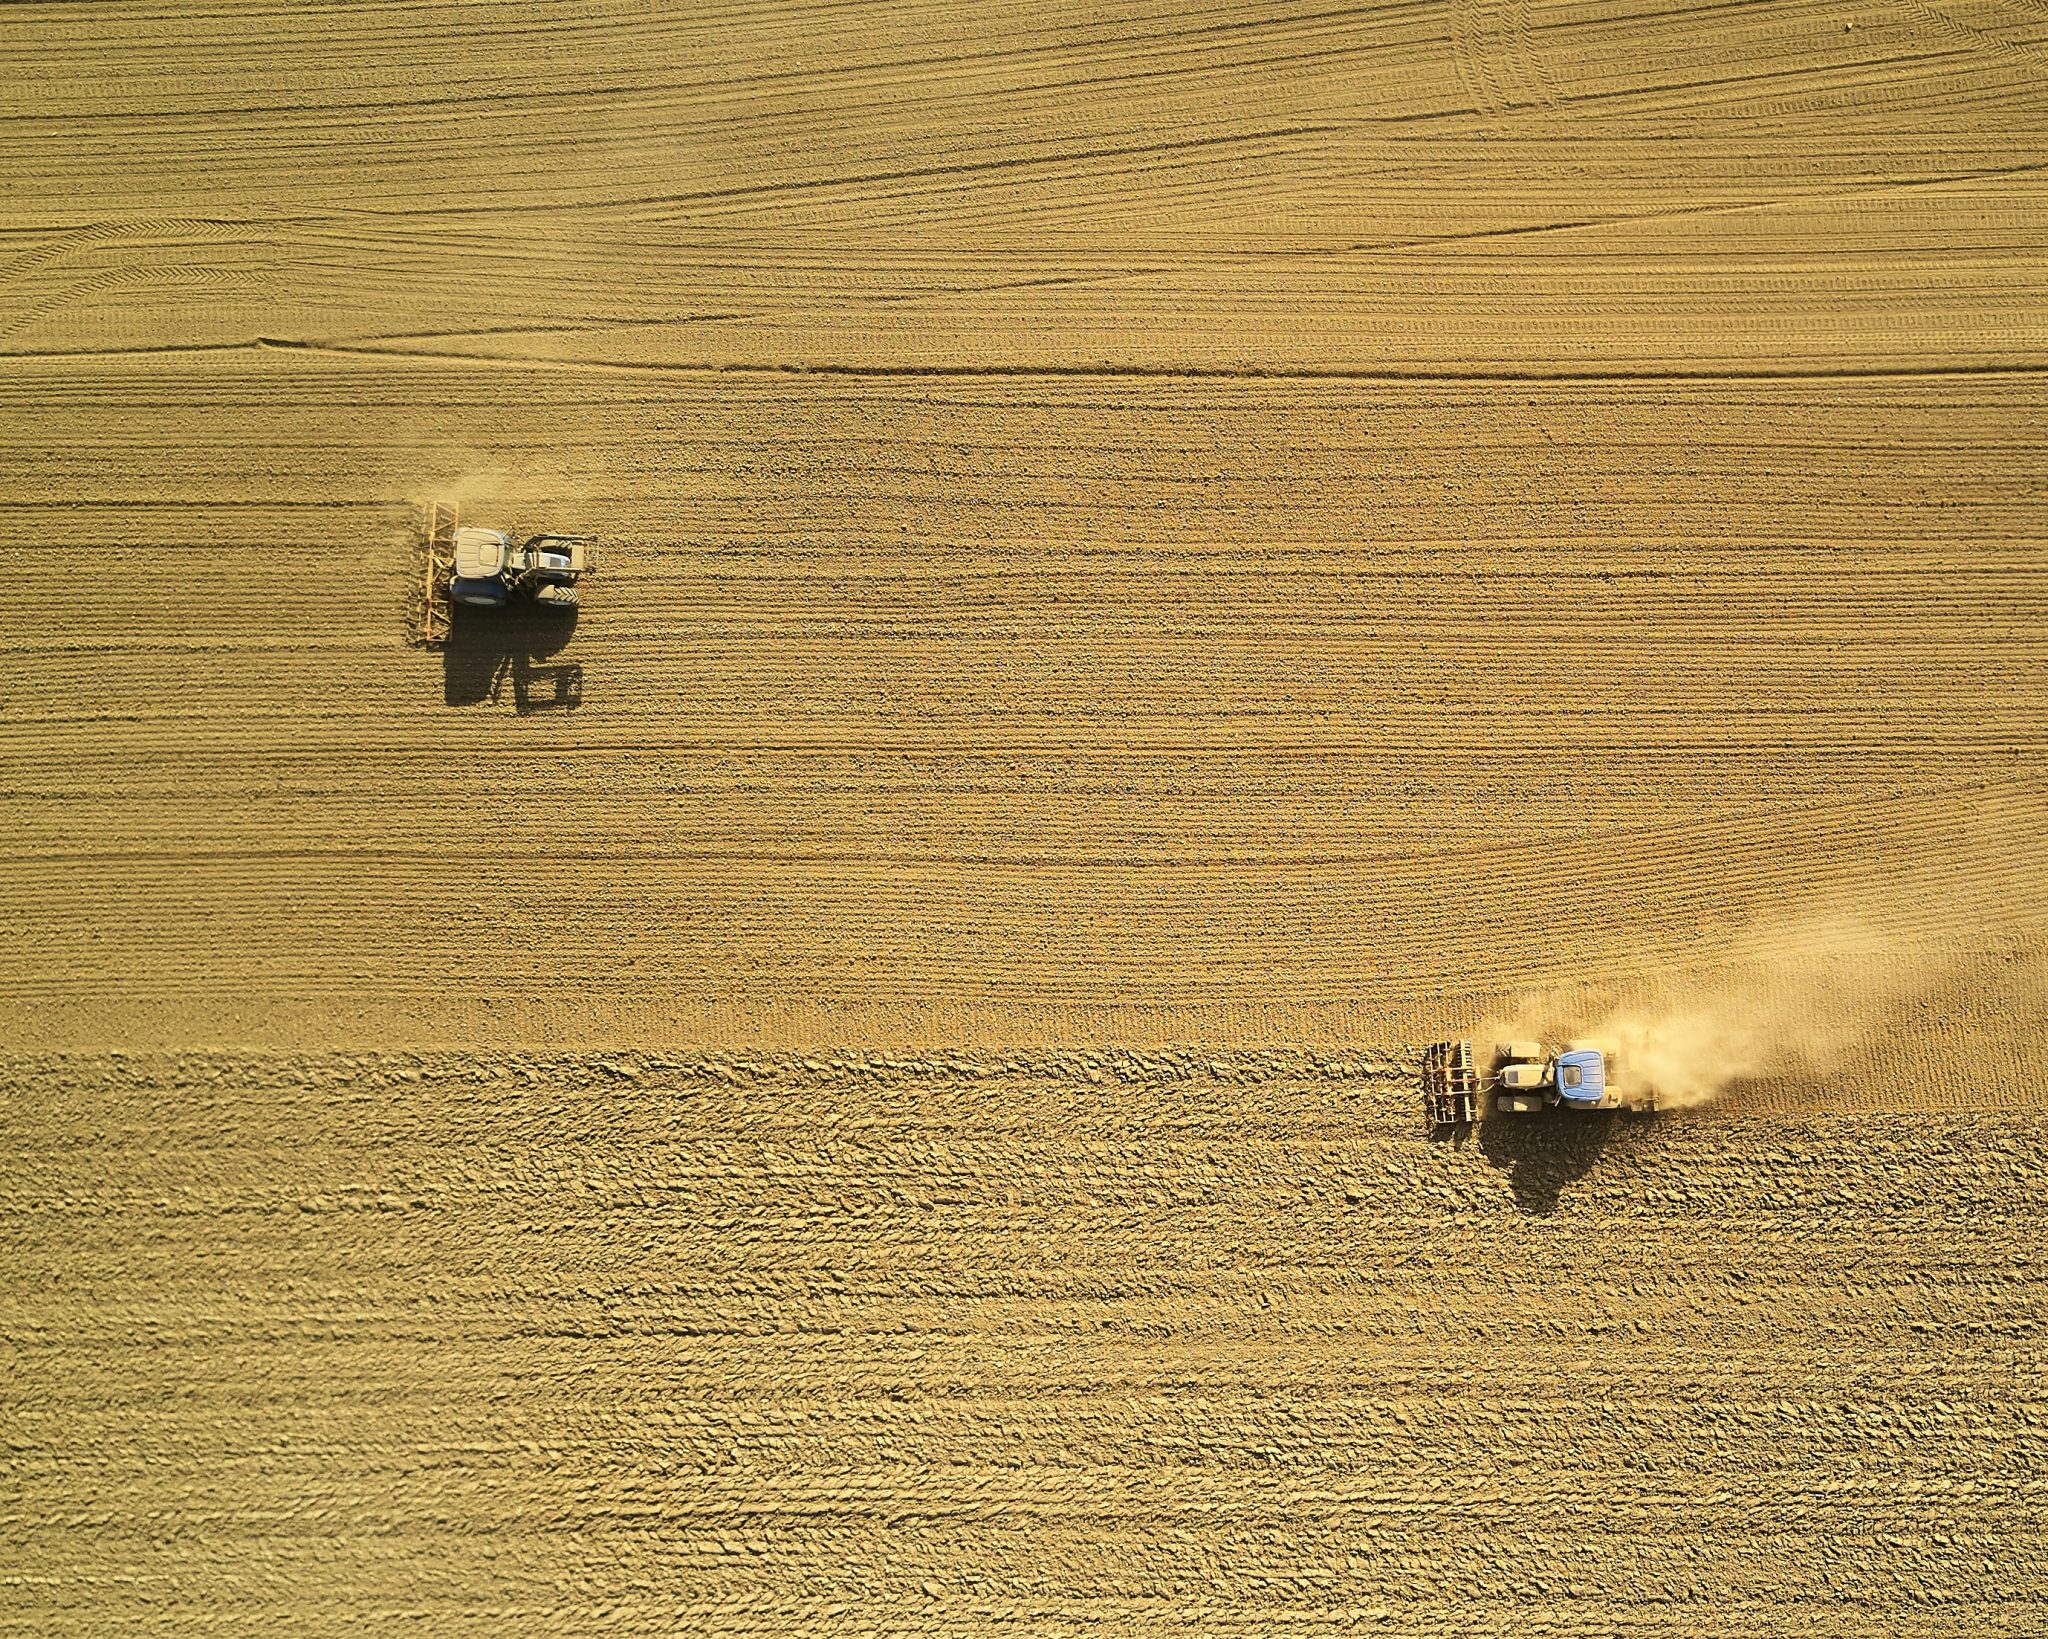 Landwirtschaft industriell betrieben - Foto: Johny-Goerend-unsplash